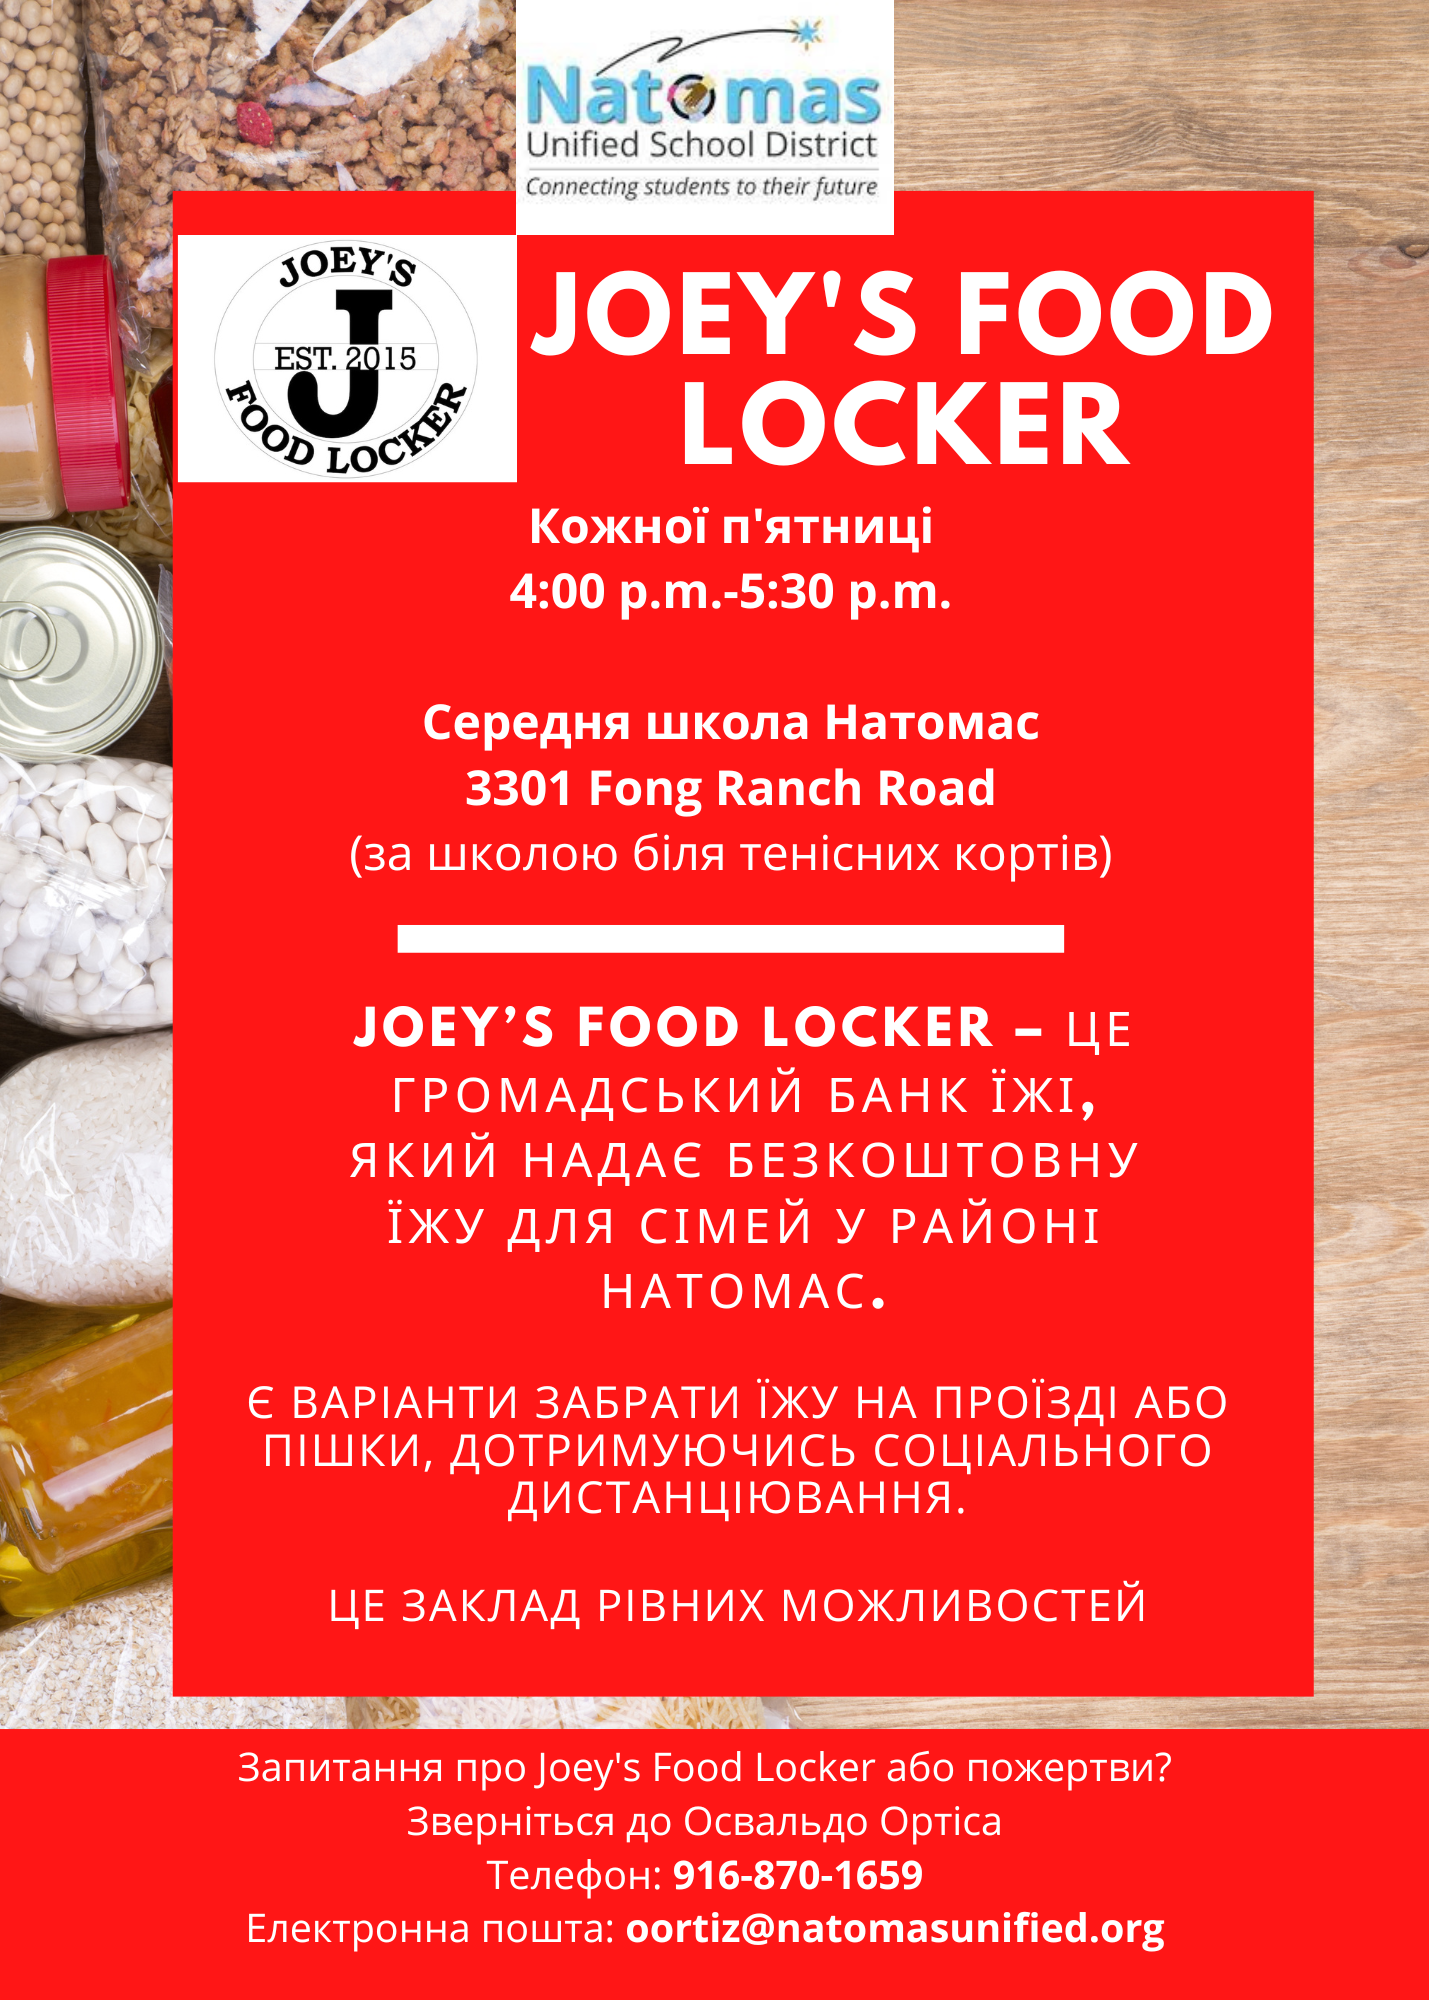 Joey_s Food Locker Flyer (Ukrainian)